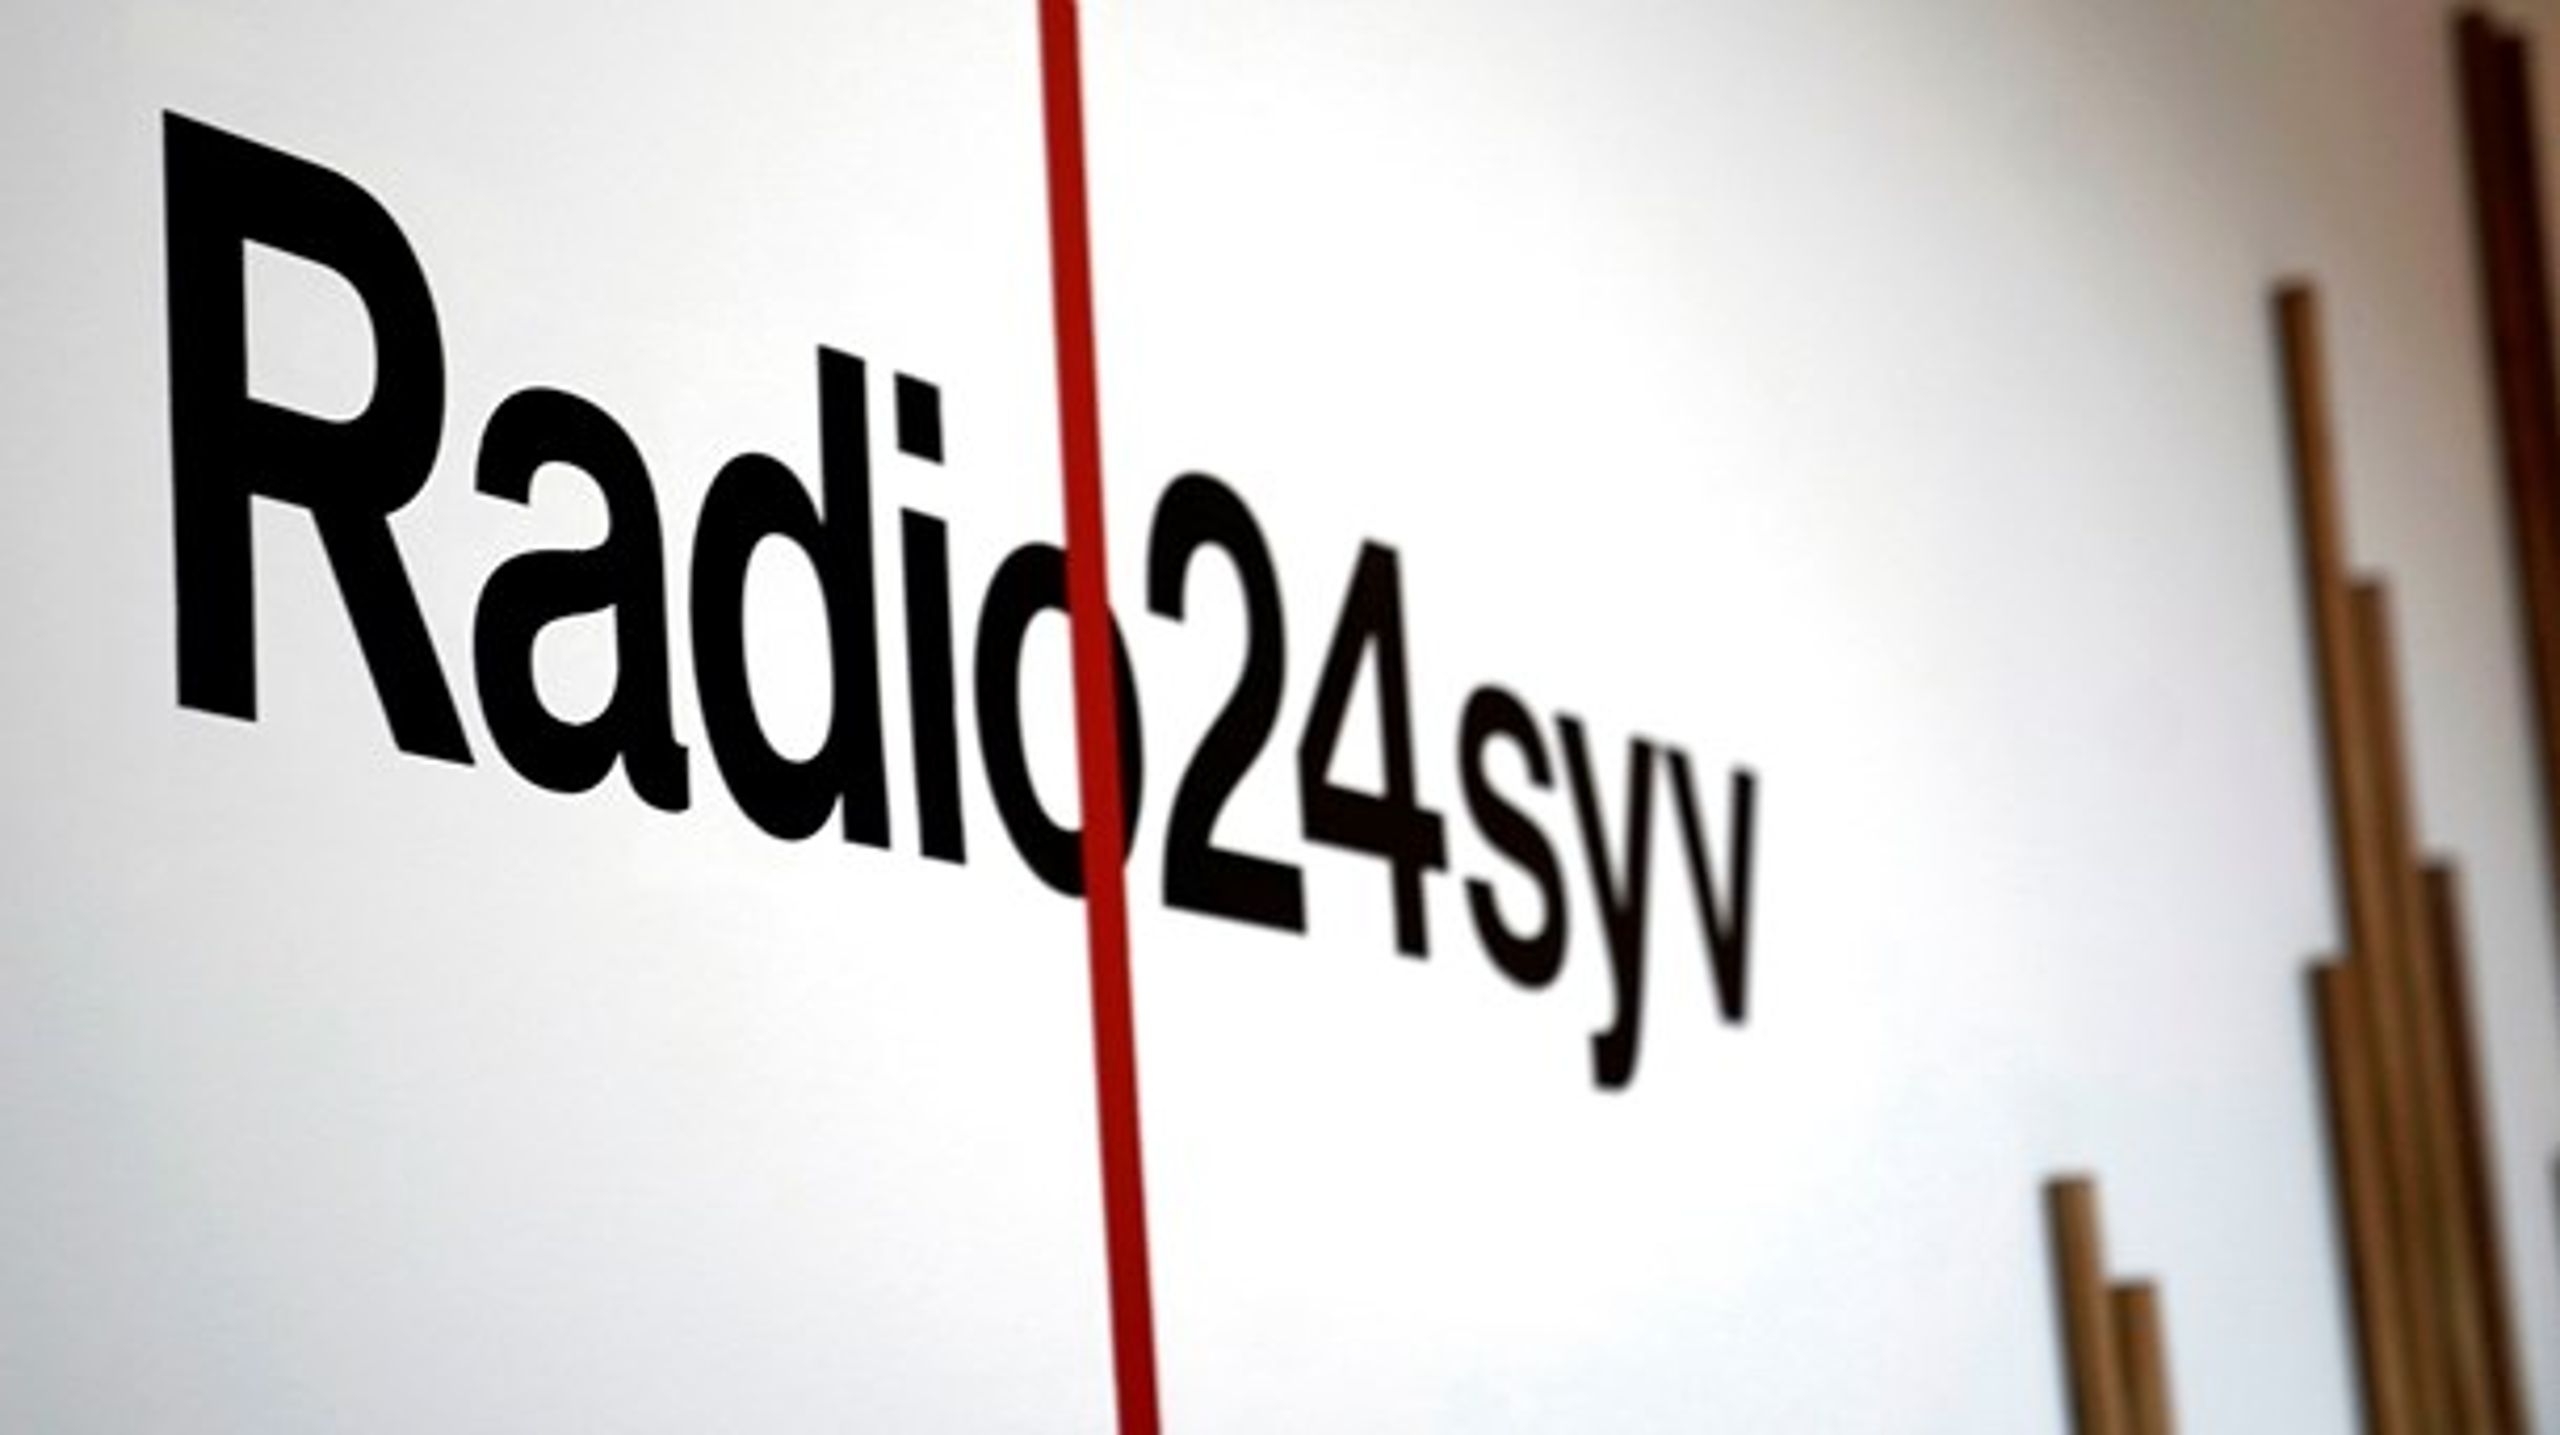 En&nbsp;stor del af midlerne til Radio24syv blev brugt på opbygning, udvikling, forsøg, fejlskud og læring i opstartsfasen. Værdifuld viden, som nu er spredt for alle vinde, mener Christian Bason.